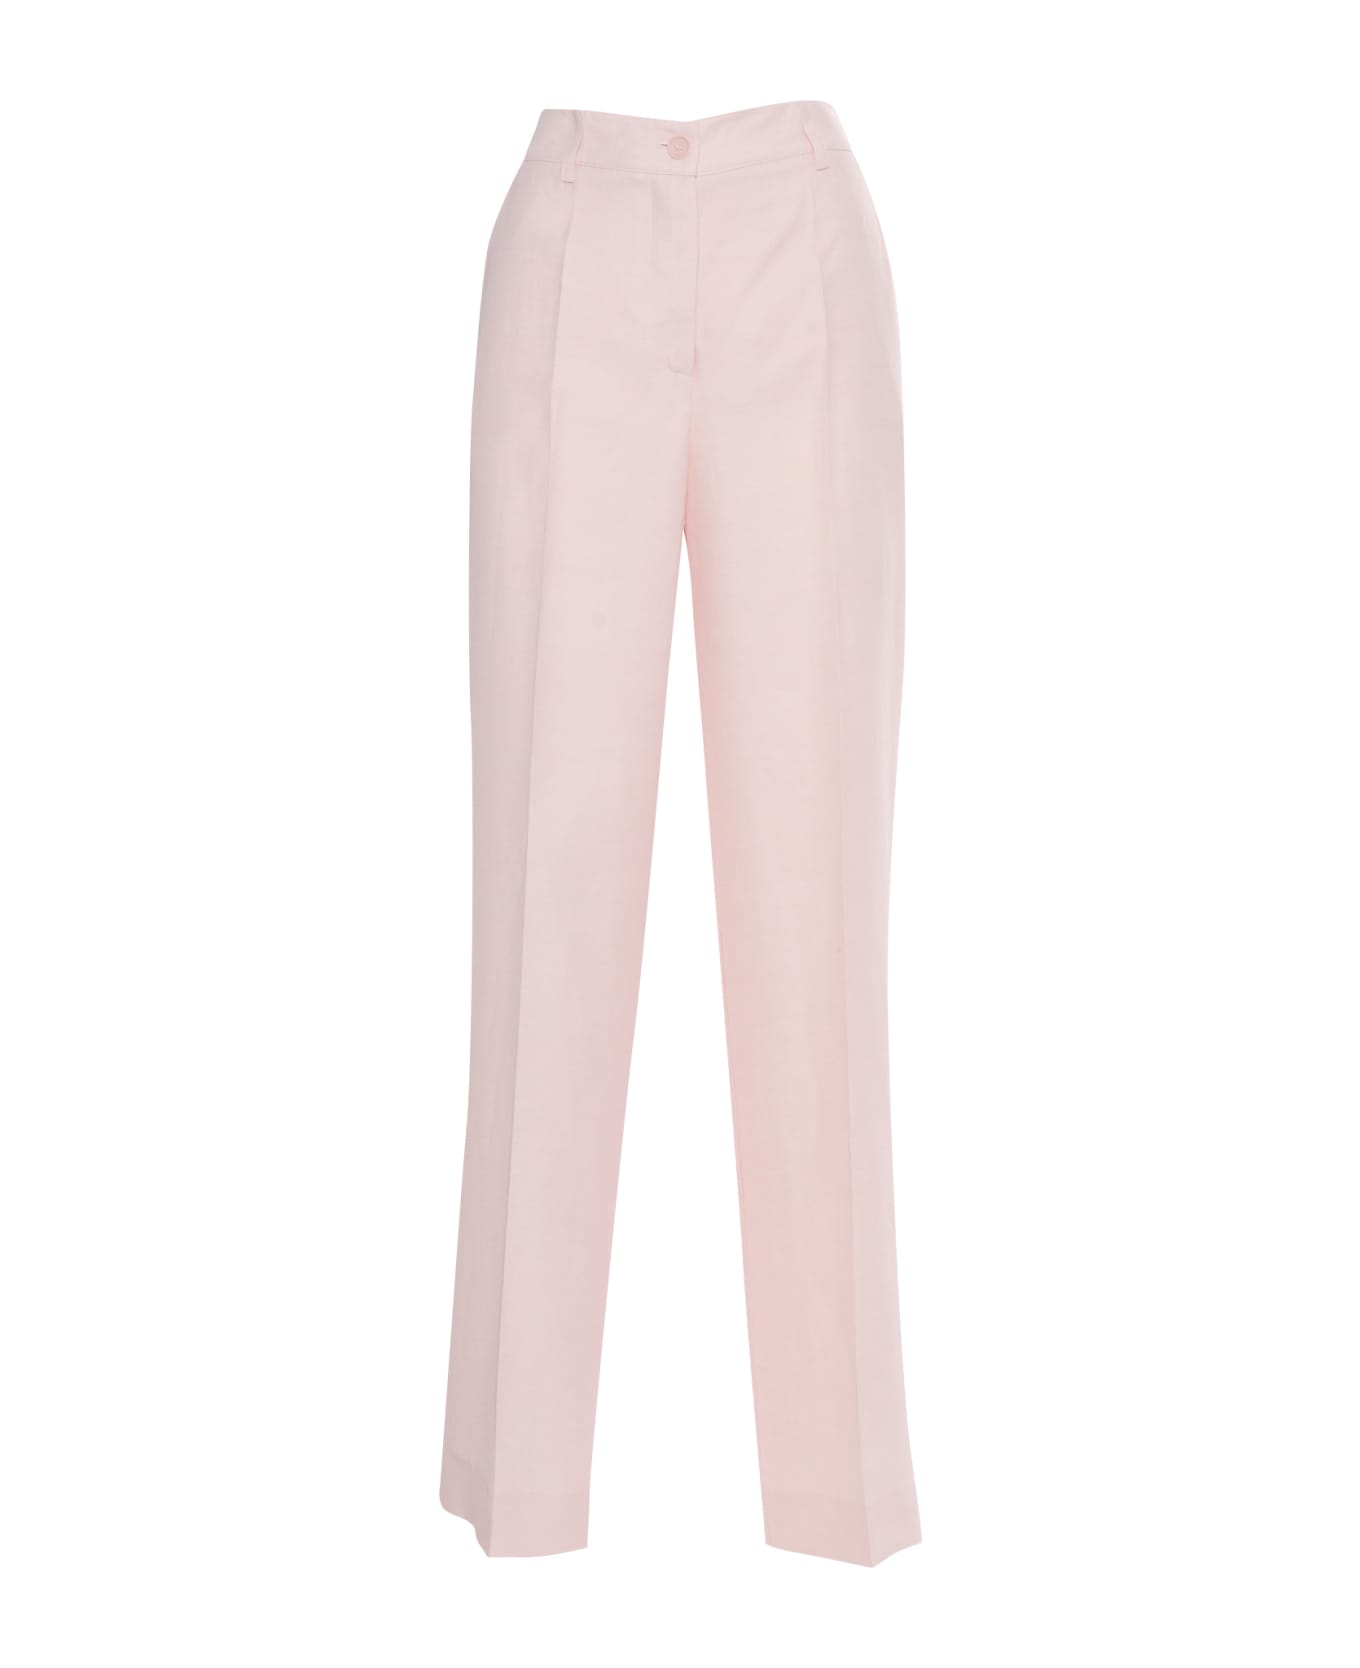 Parosh Pantalone Elegante Donna - PINK